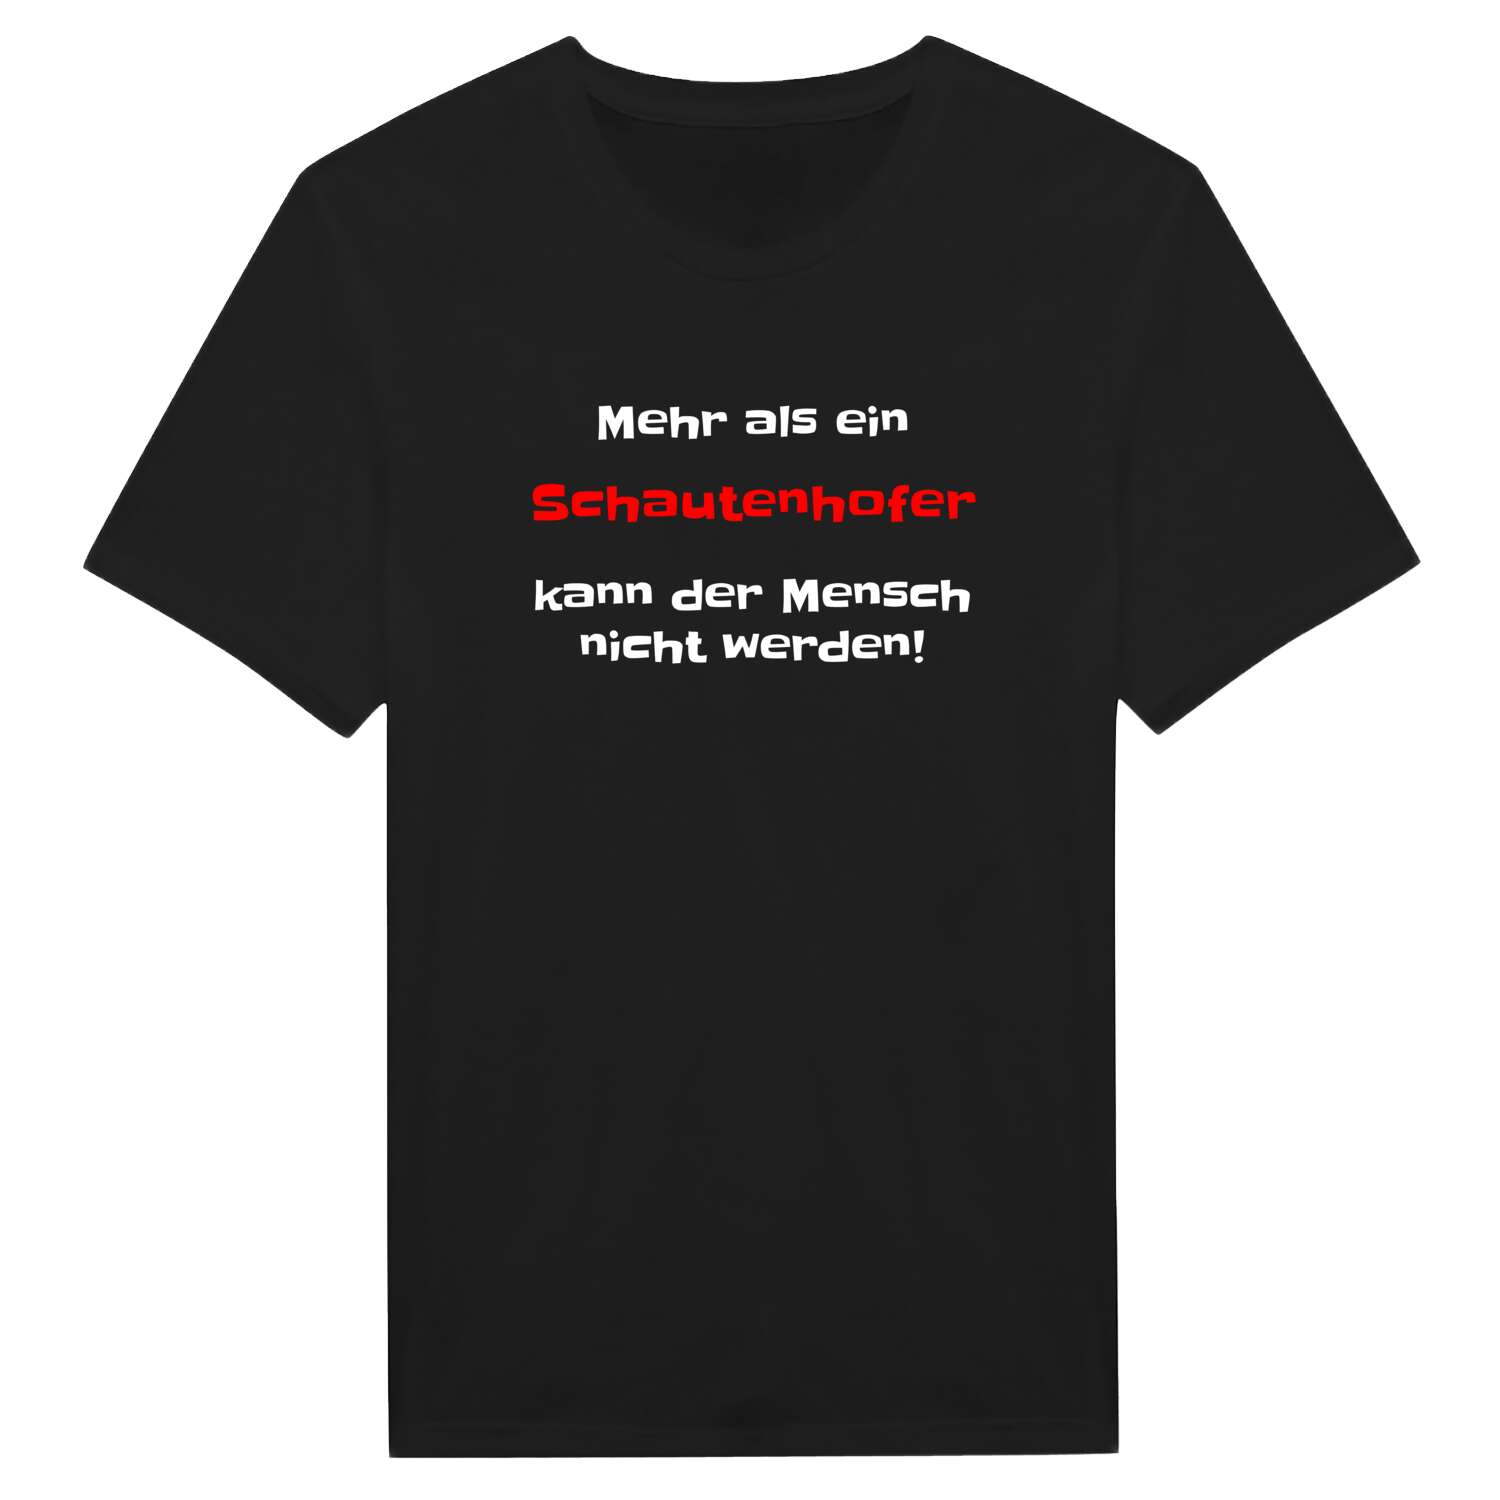 Schautenhof T-Shirt »Mehr als ein«